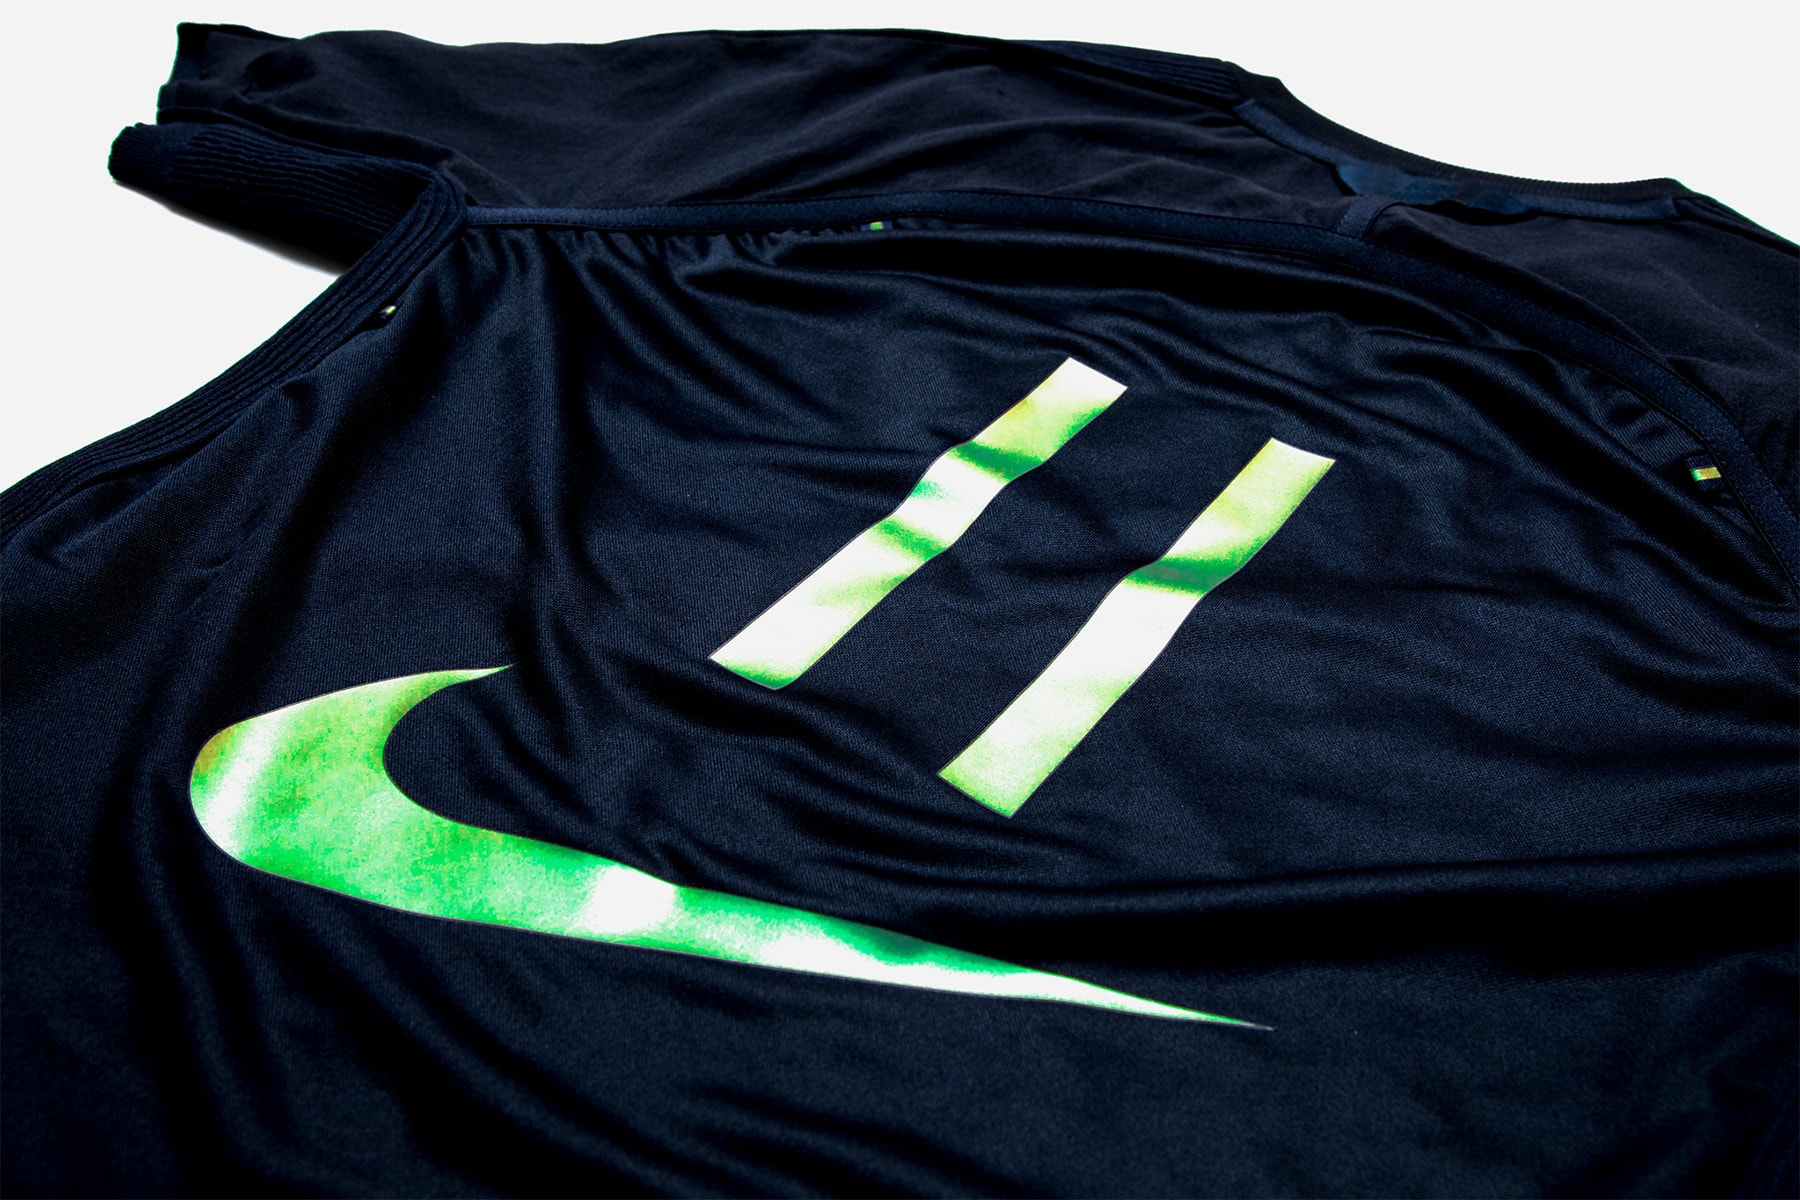 Nike x キム・ジョーンズによる最新カプセル “Football Reimagined” のアパレルアイテムのフォーカス